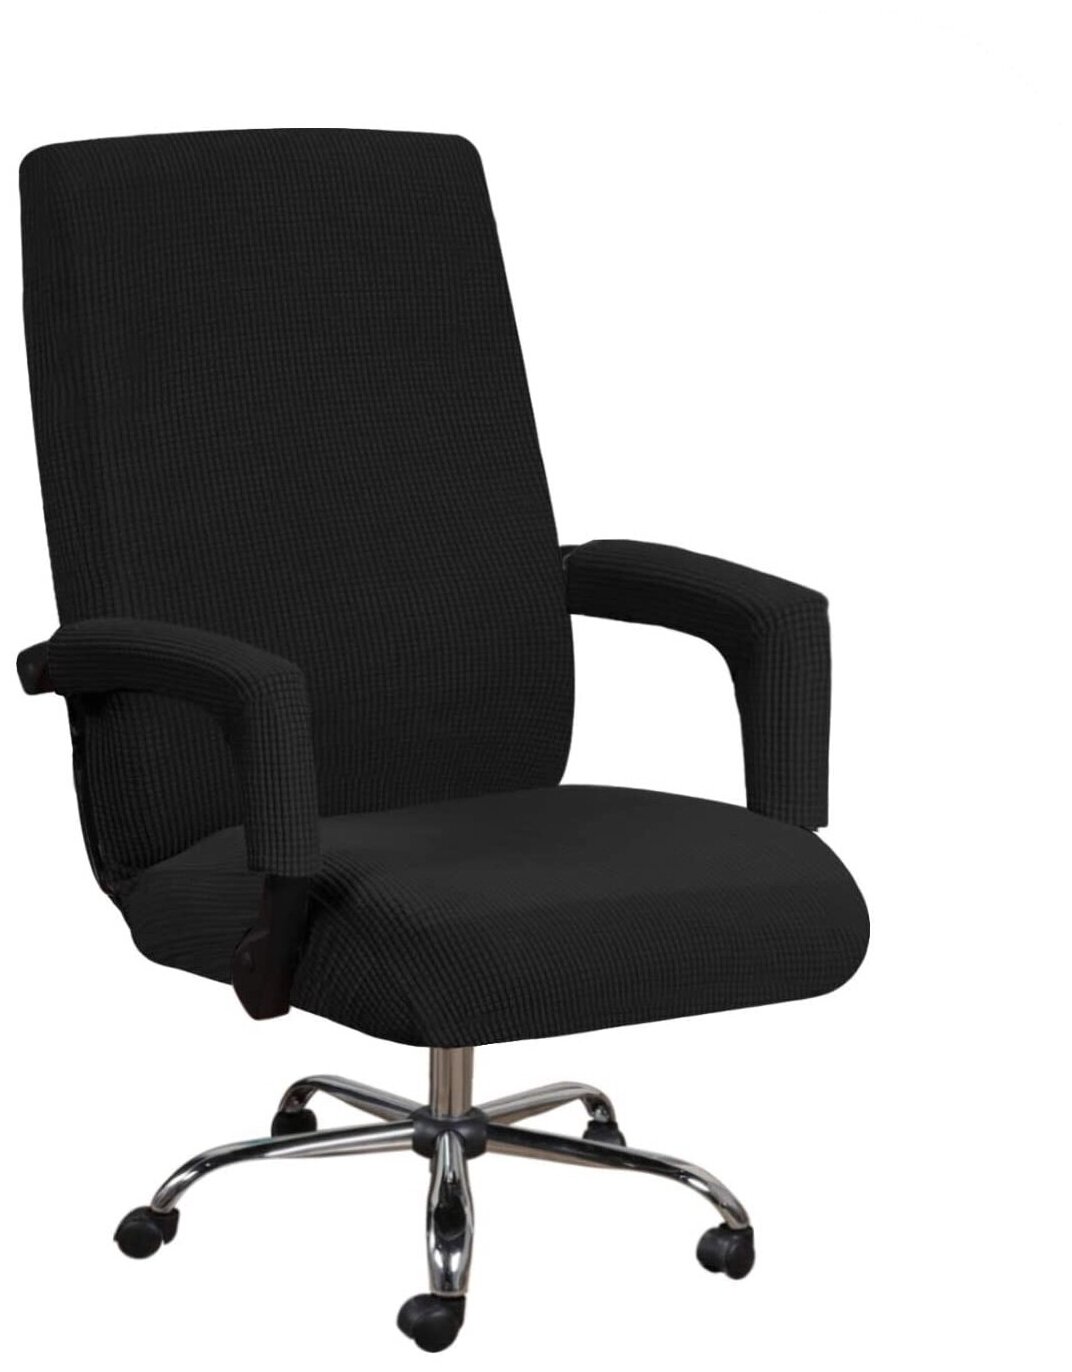 Чехол на стул компьютерное кресло Crocus-Life A1-Black размер L цвет: черный